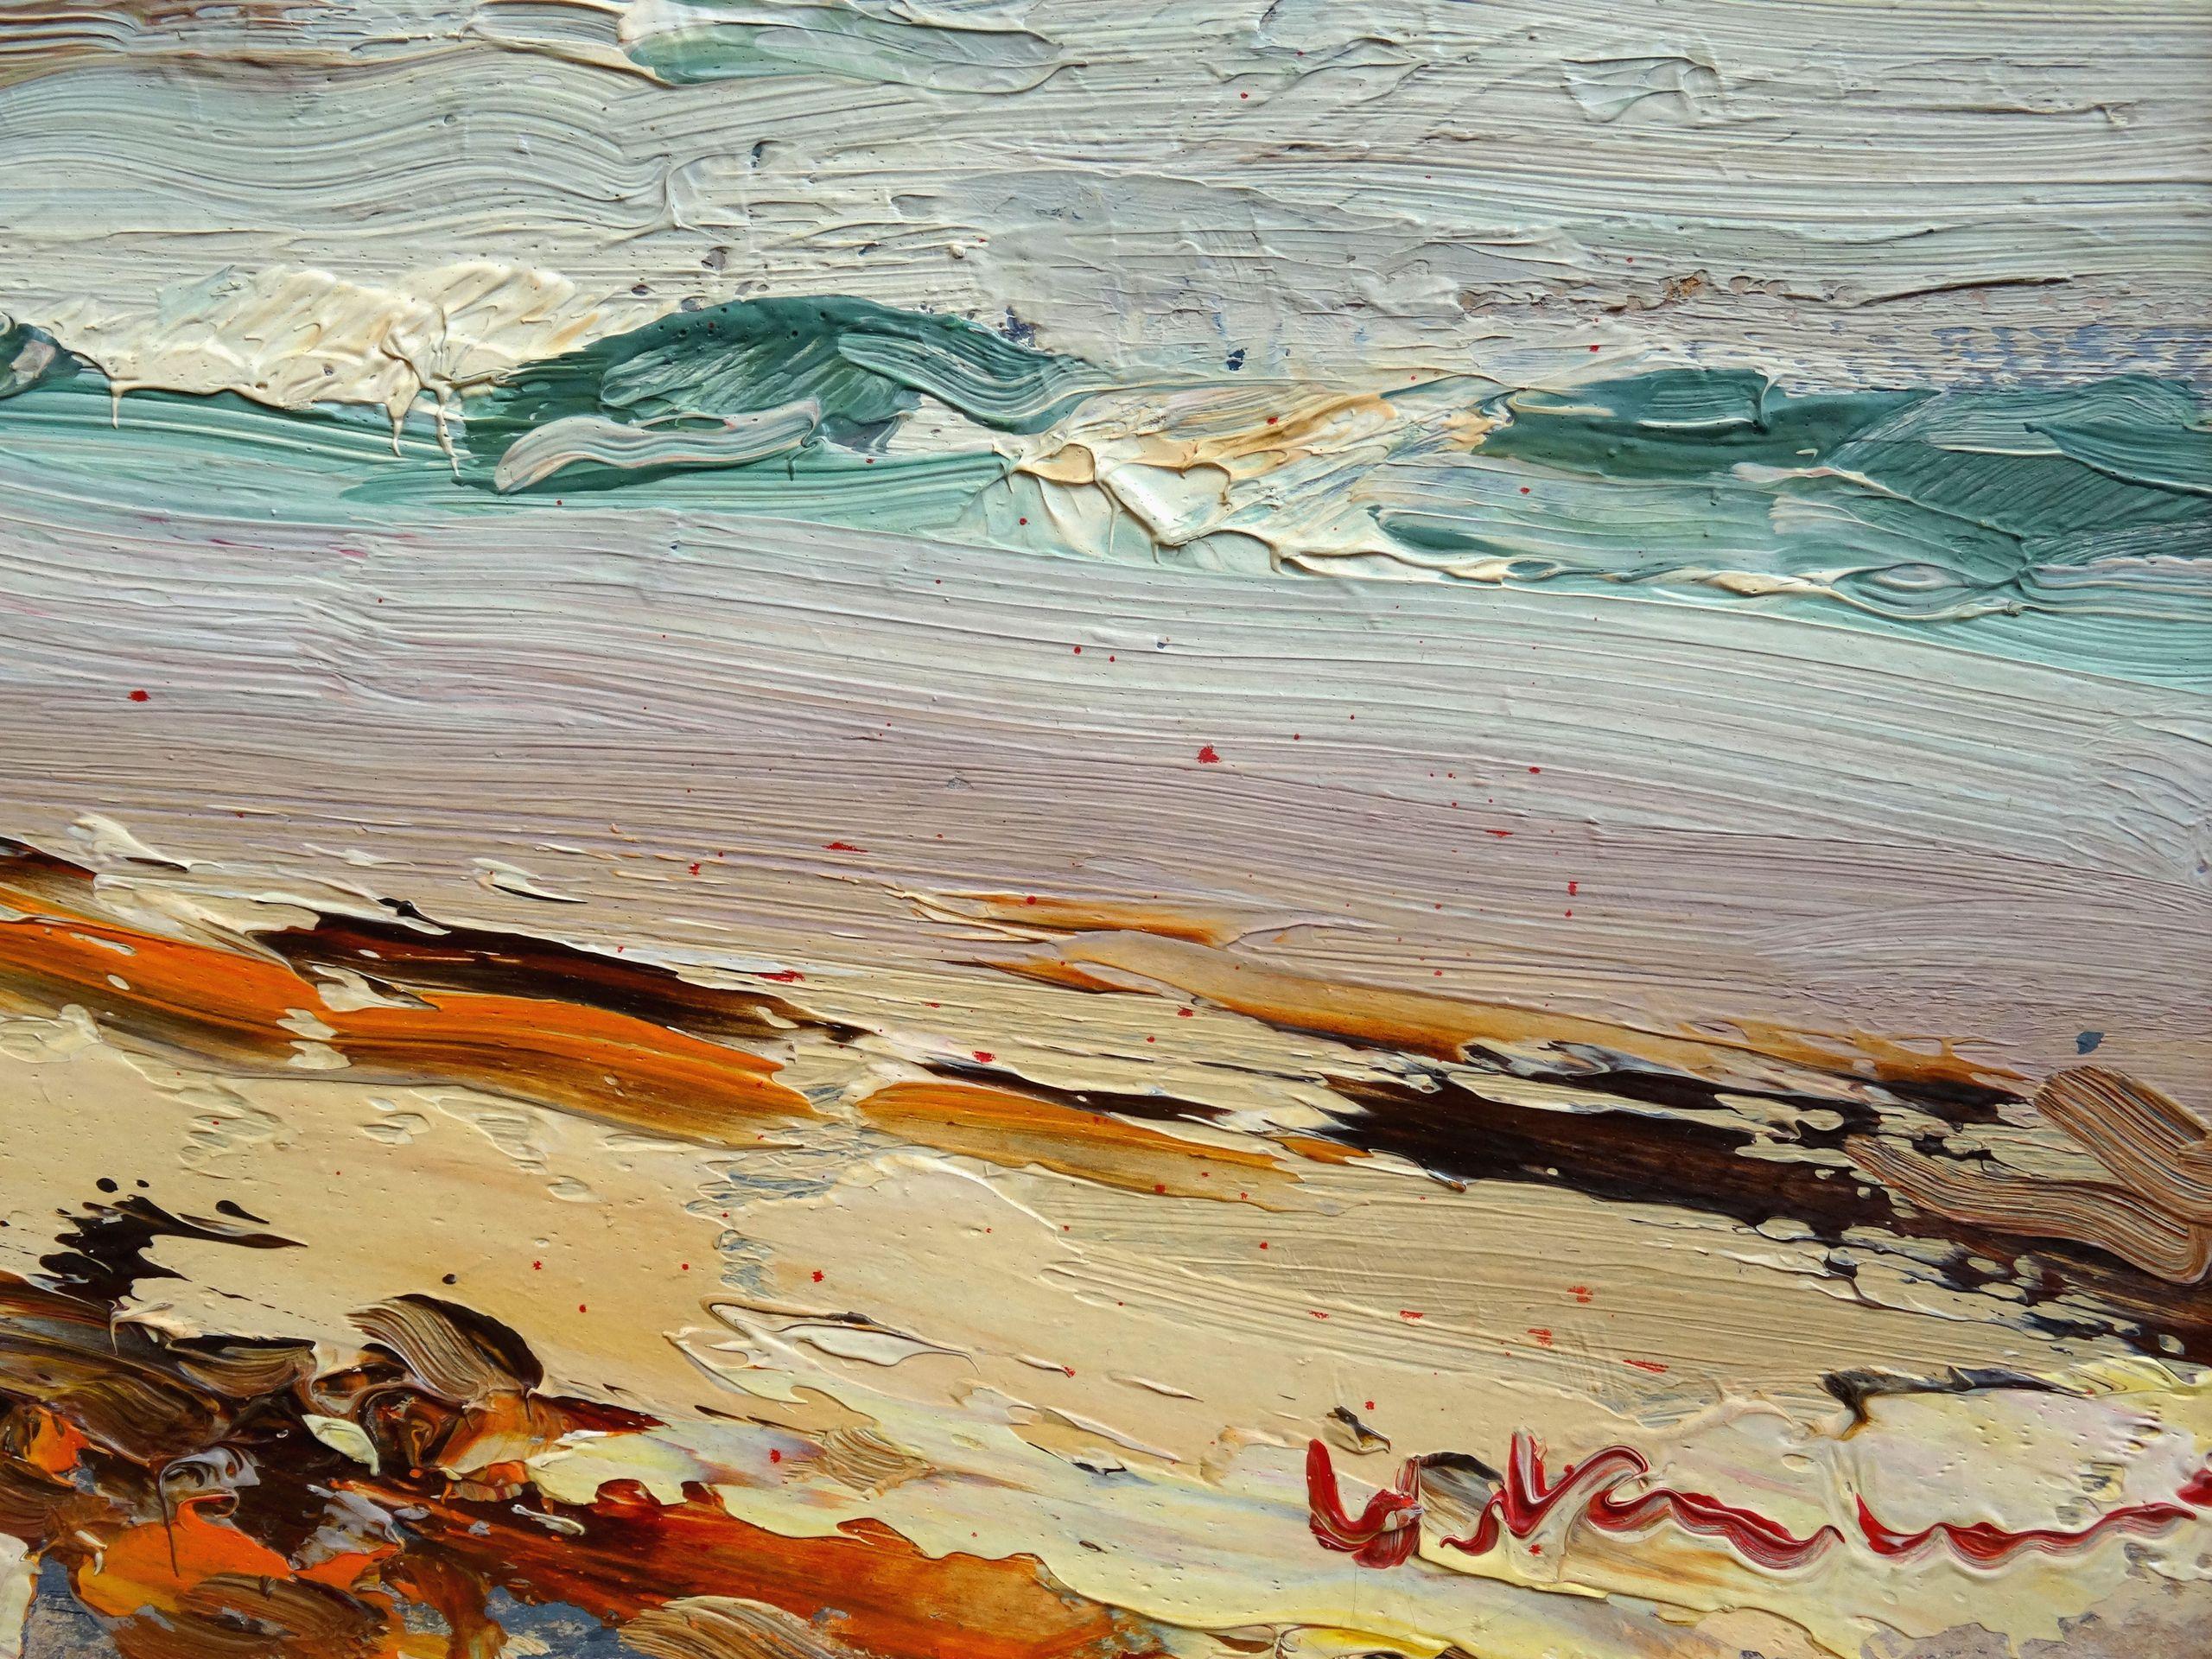 Seashore. 1950. Cardboard, oil, 34x48 cm - Painting by Vitalijs Kalvans